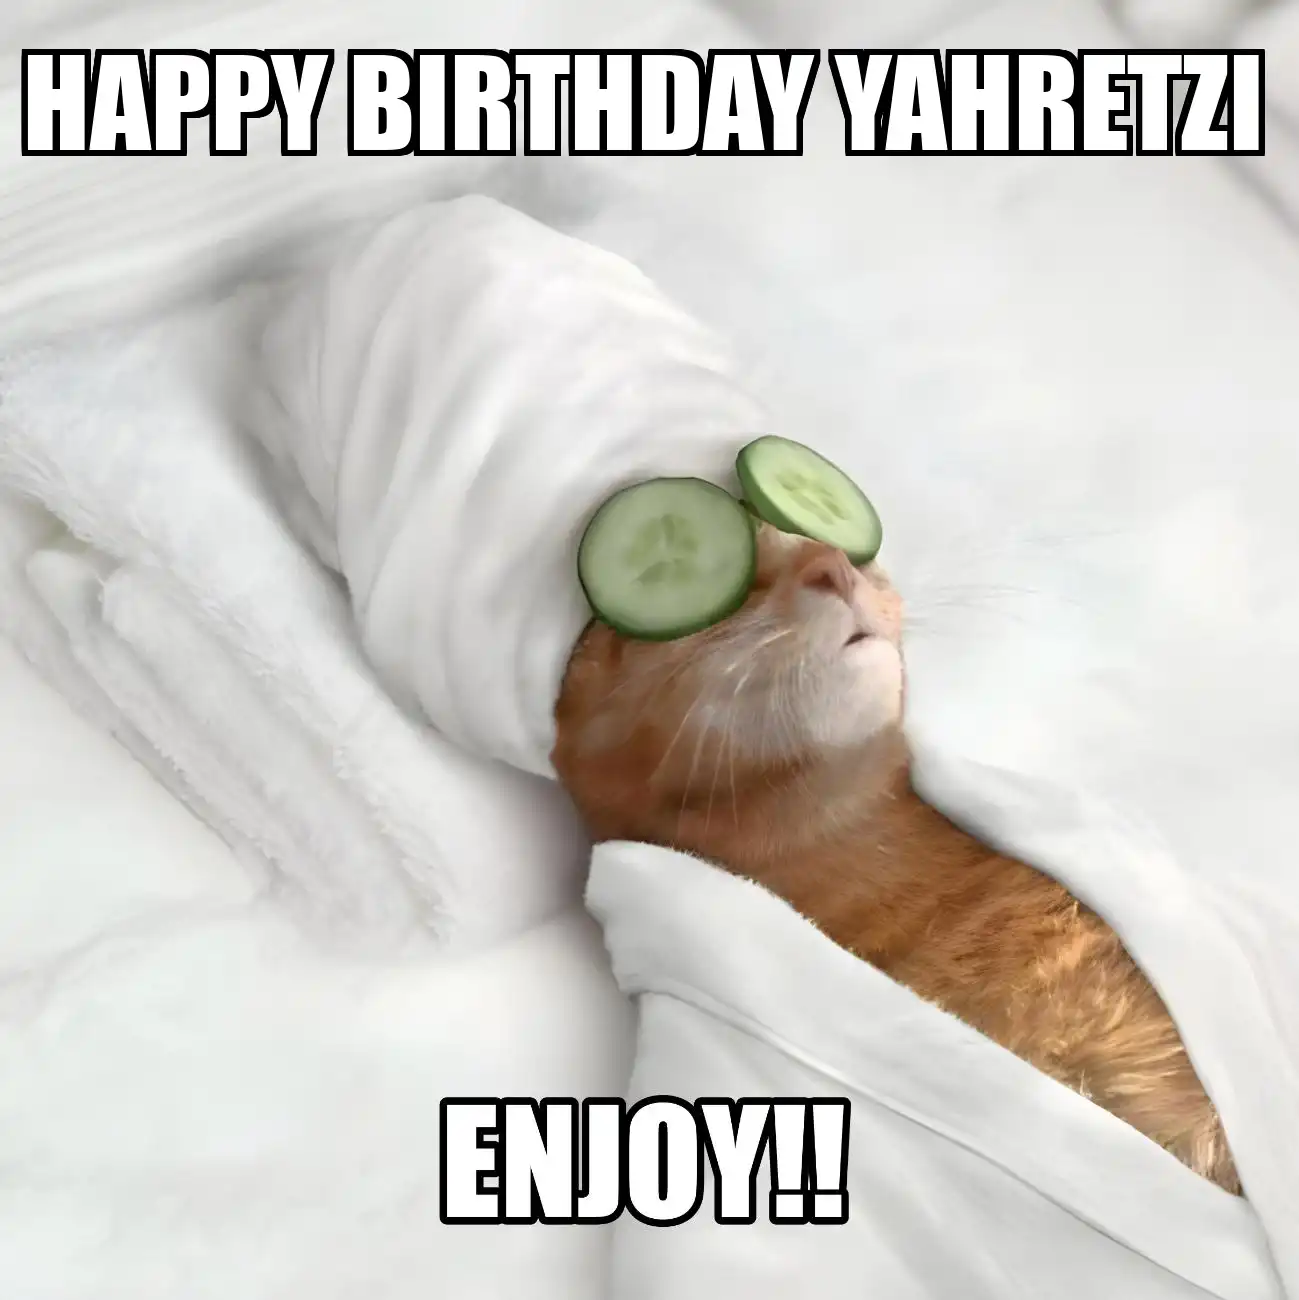 Happy Birthday Yahretzi Enjoy Cat Meme